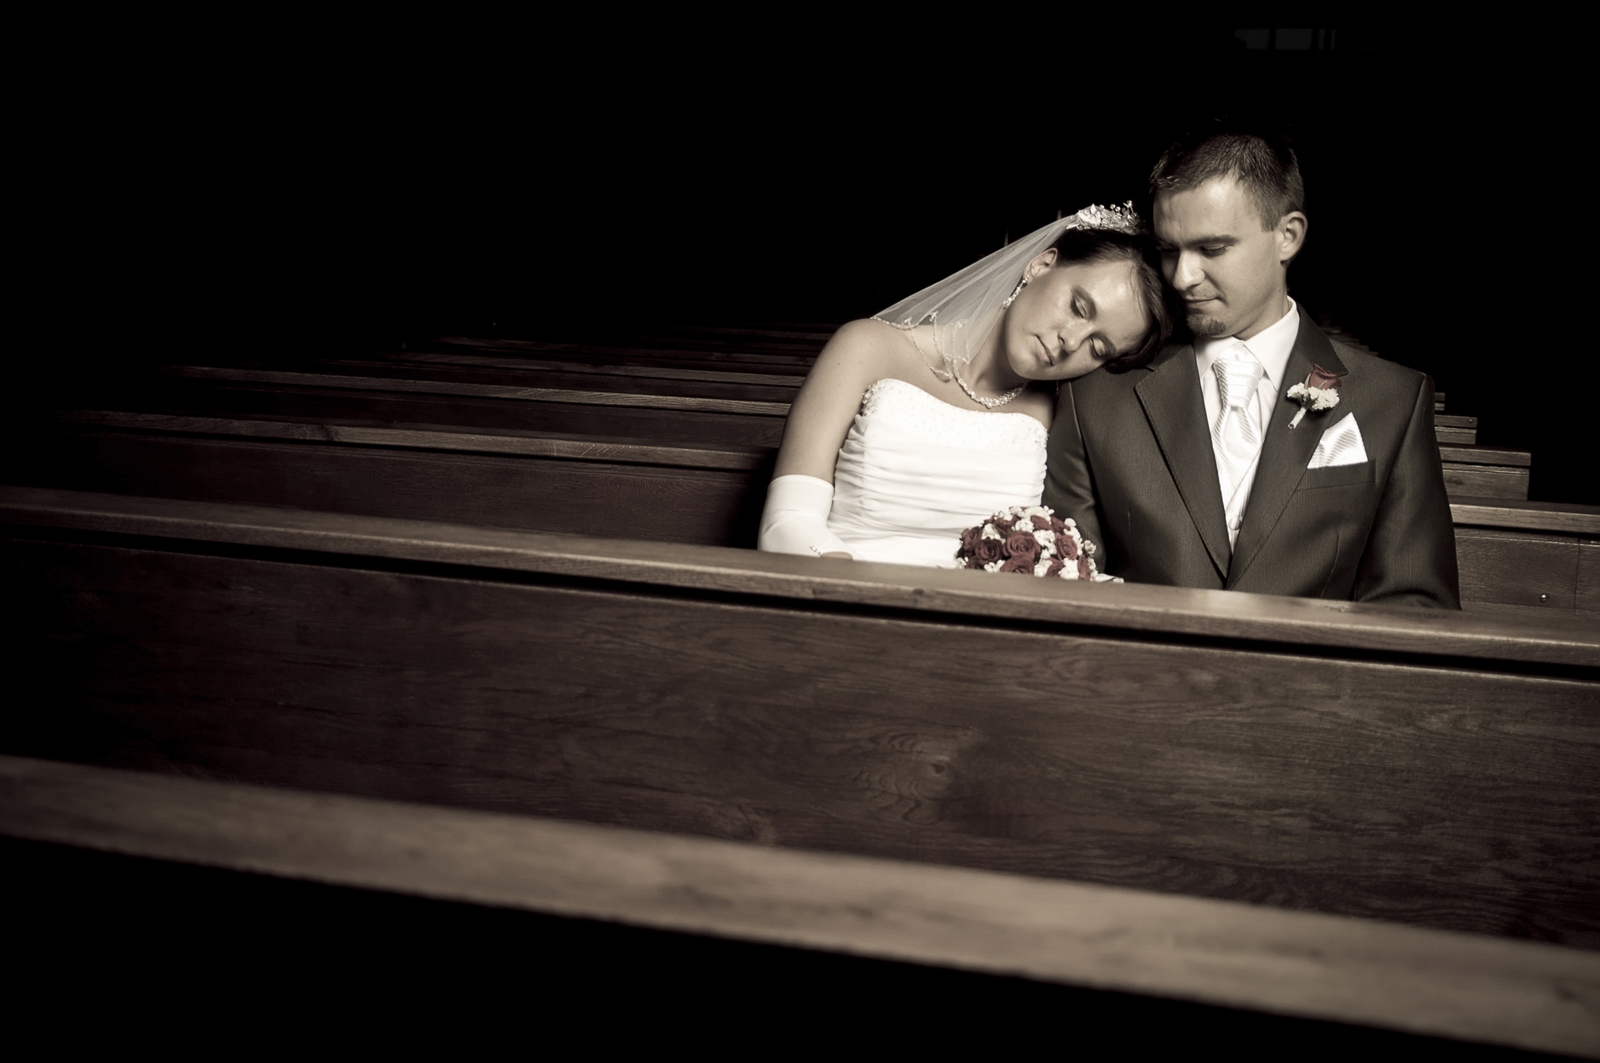 Artystyczne zdjęcia ślubne zrobione przez profesjonalnego fotografa z warszawy na ślubie pary młodej